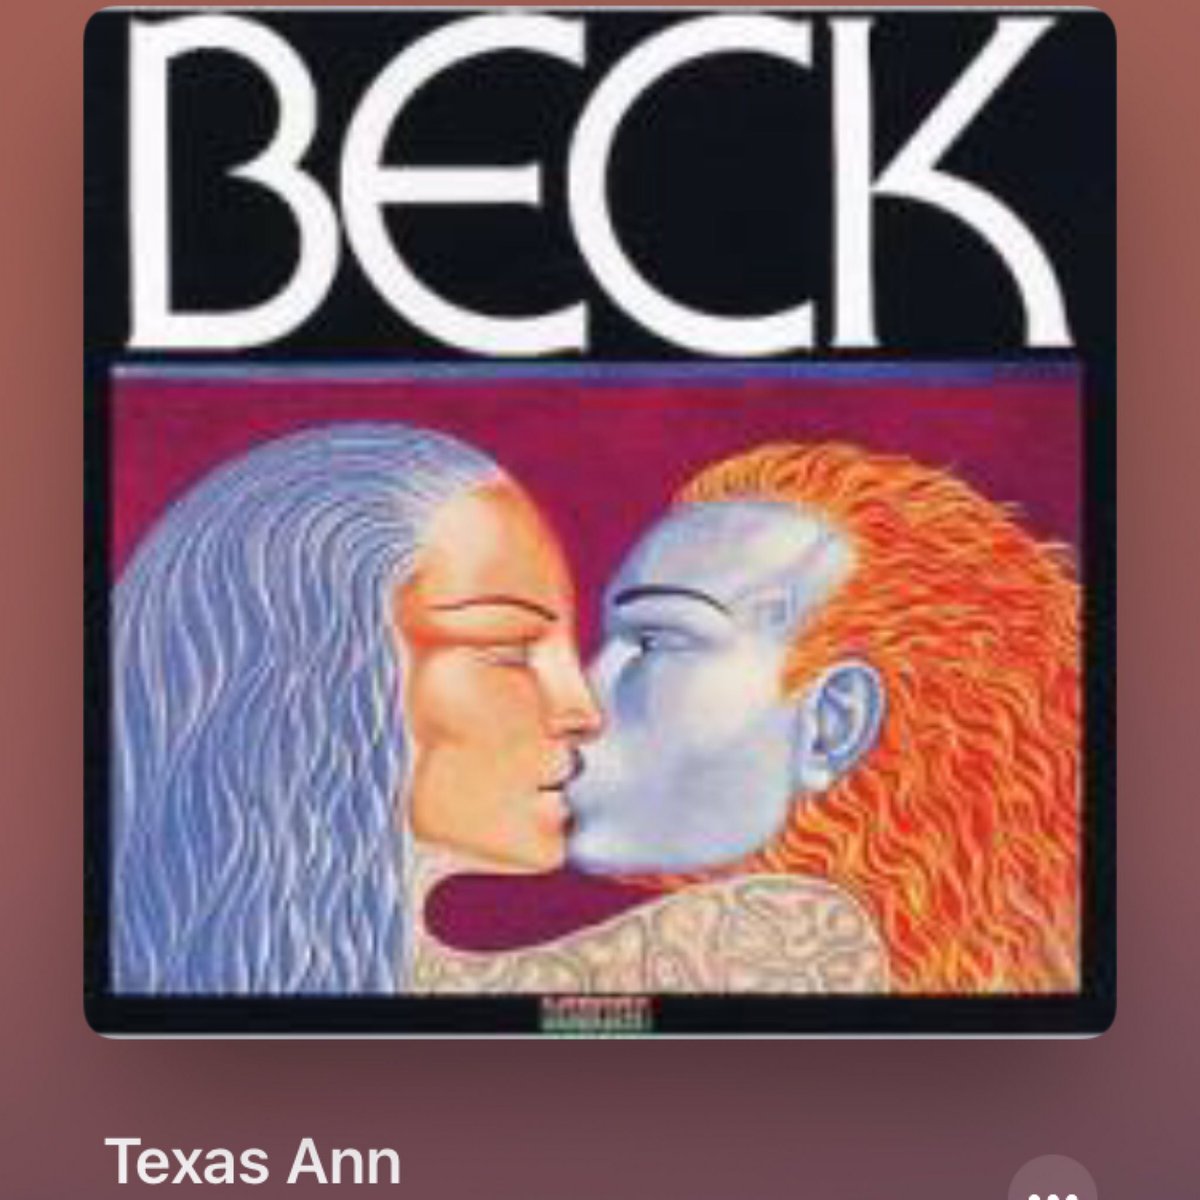 これね、再発盤とかだと堂々とジャケに #サンボーン の名前書いてあったりすんだよね…
#NowPlaying
🎵 Texas Ann
by 🎵 Joe Beck
from 🎵 Beck
#dongrolnick 
#Jazz #piano #70s 
#JoeBeck
#davidsanborn